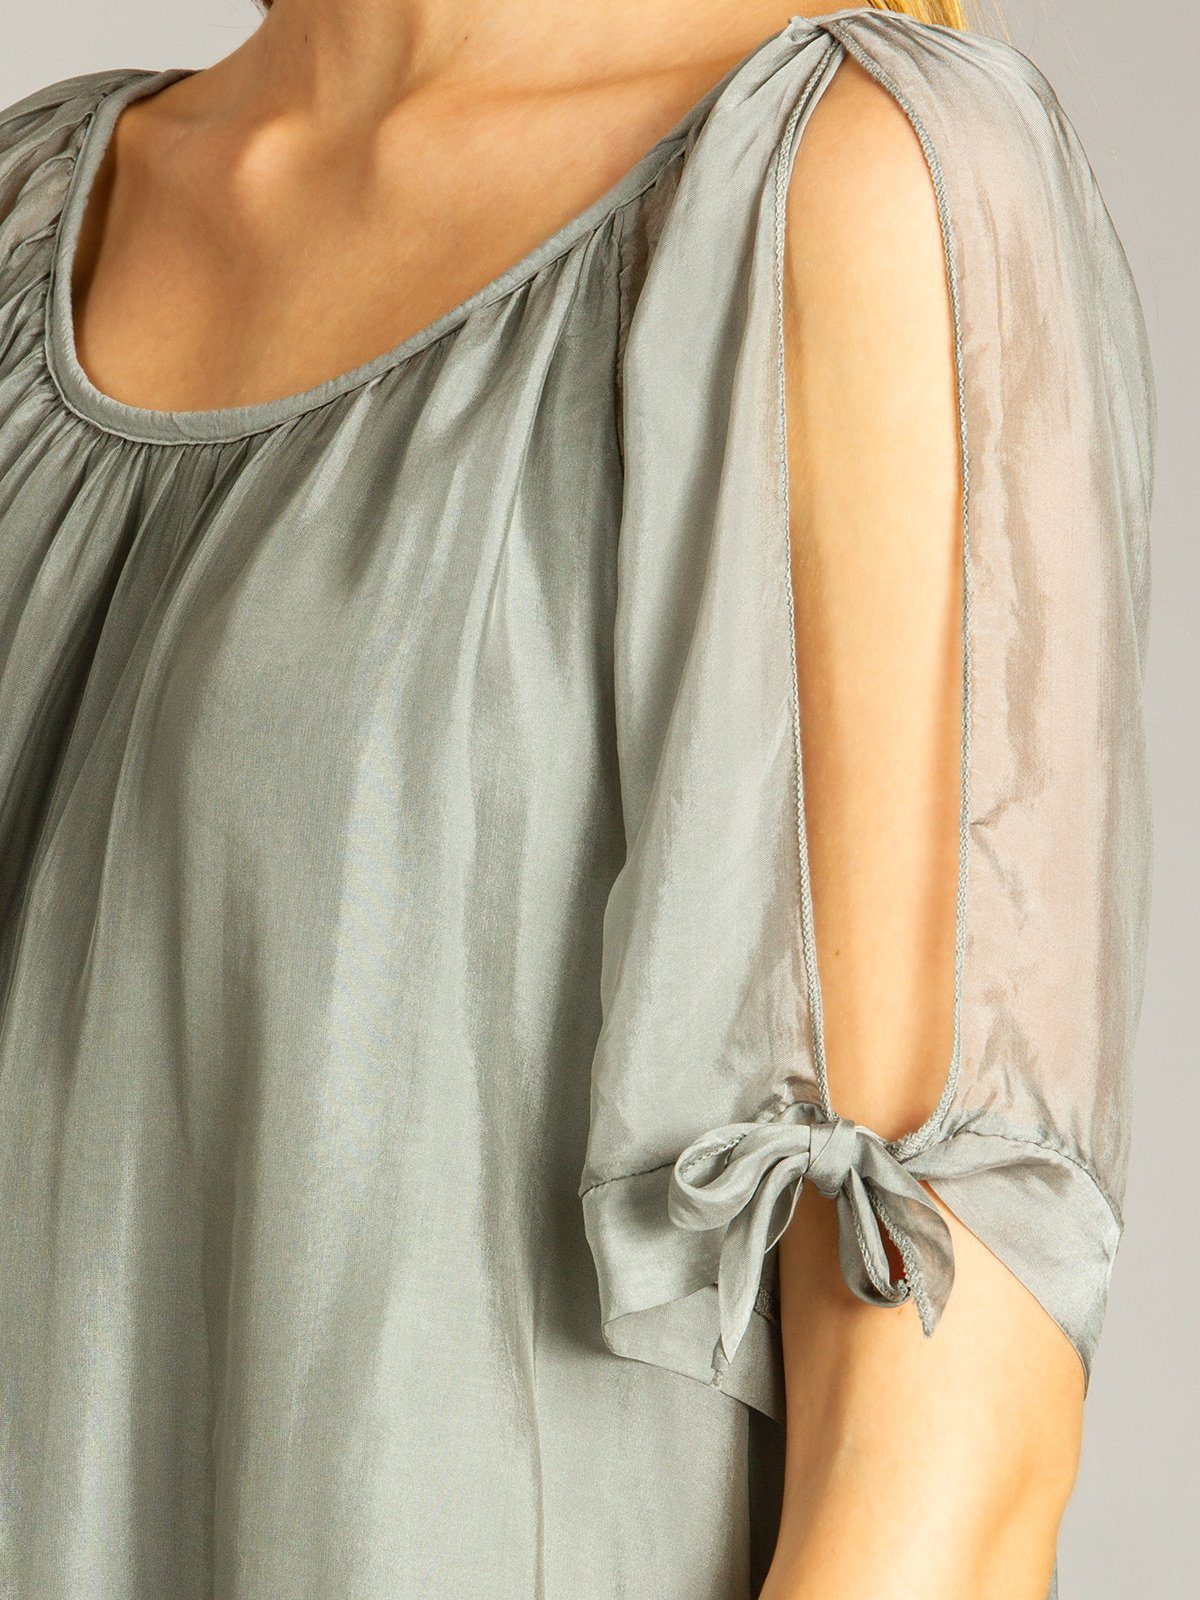 Sommer mit BLU020 Damen lange Bluse dunkelgrau Shirtbluse elegante Seidenanteil leichte Caspar